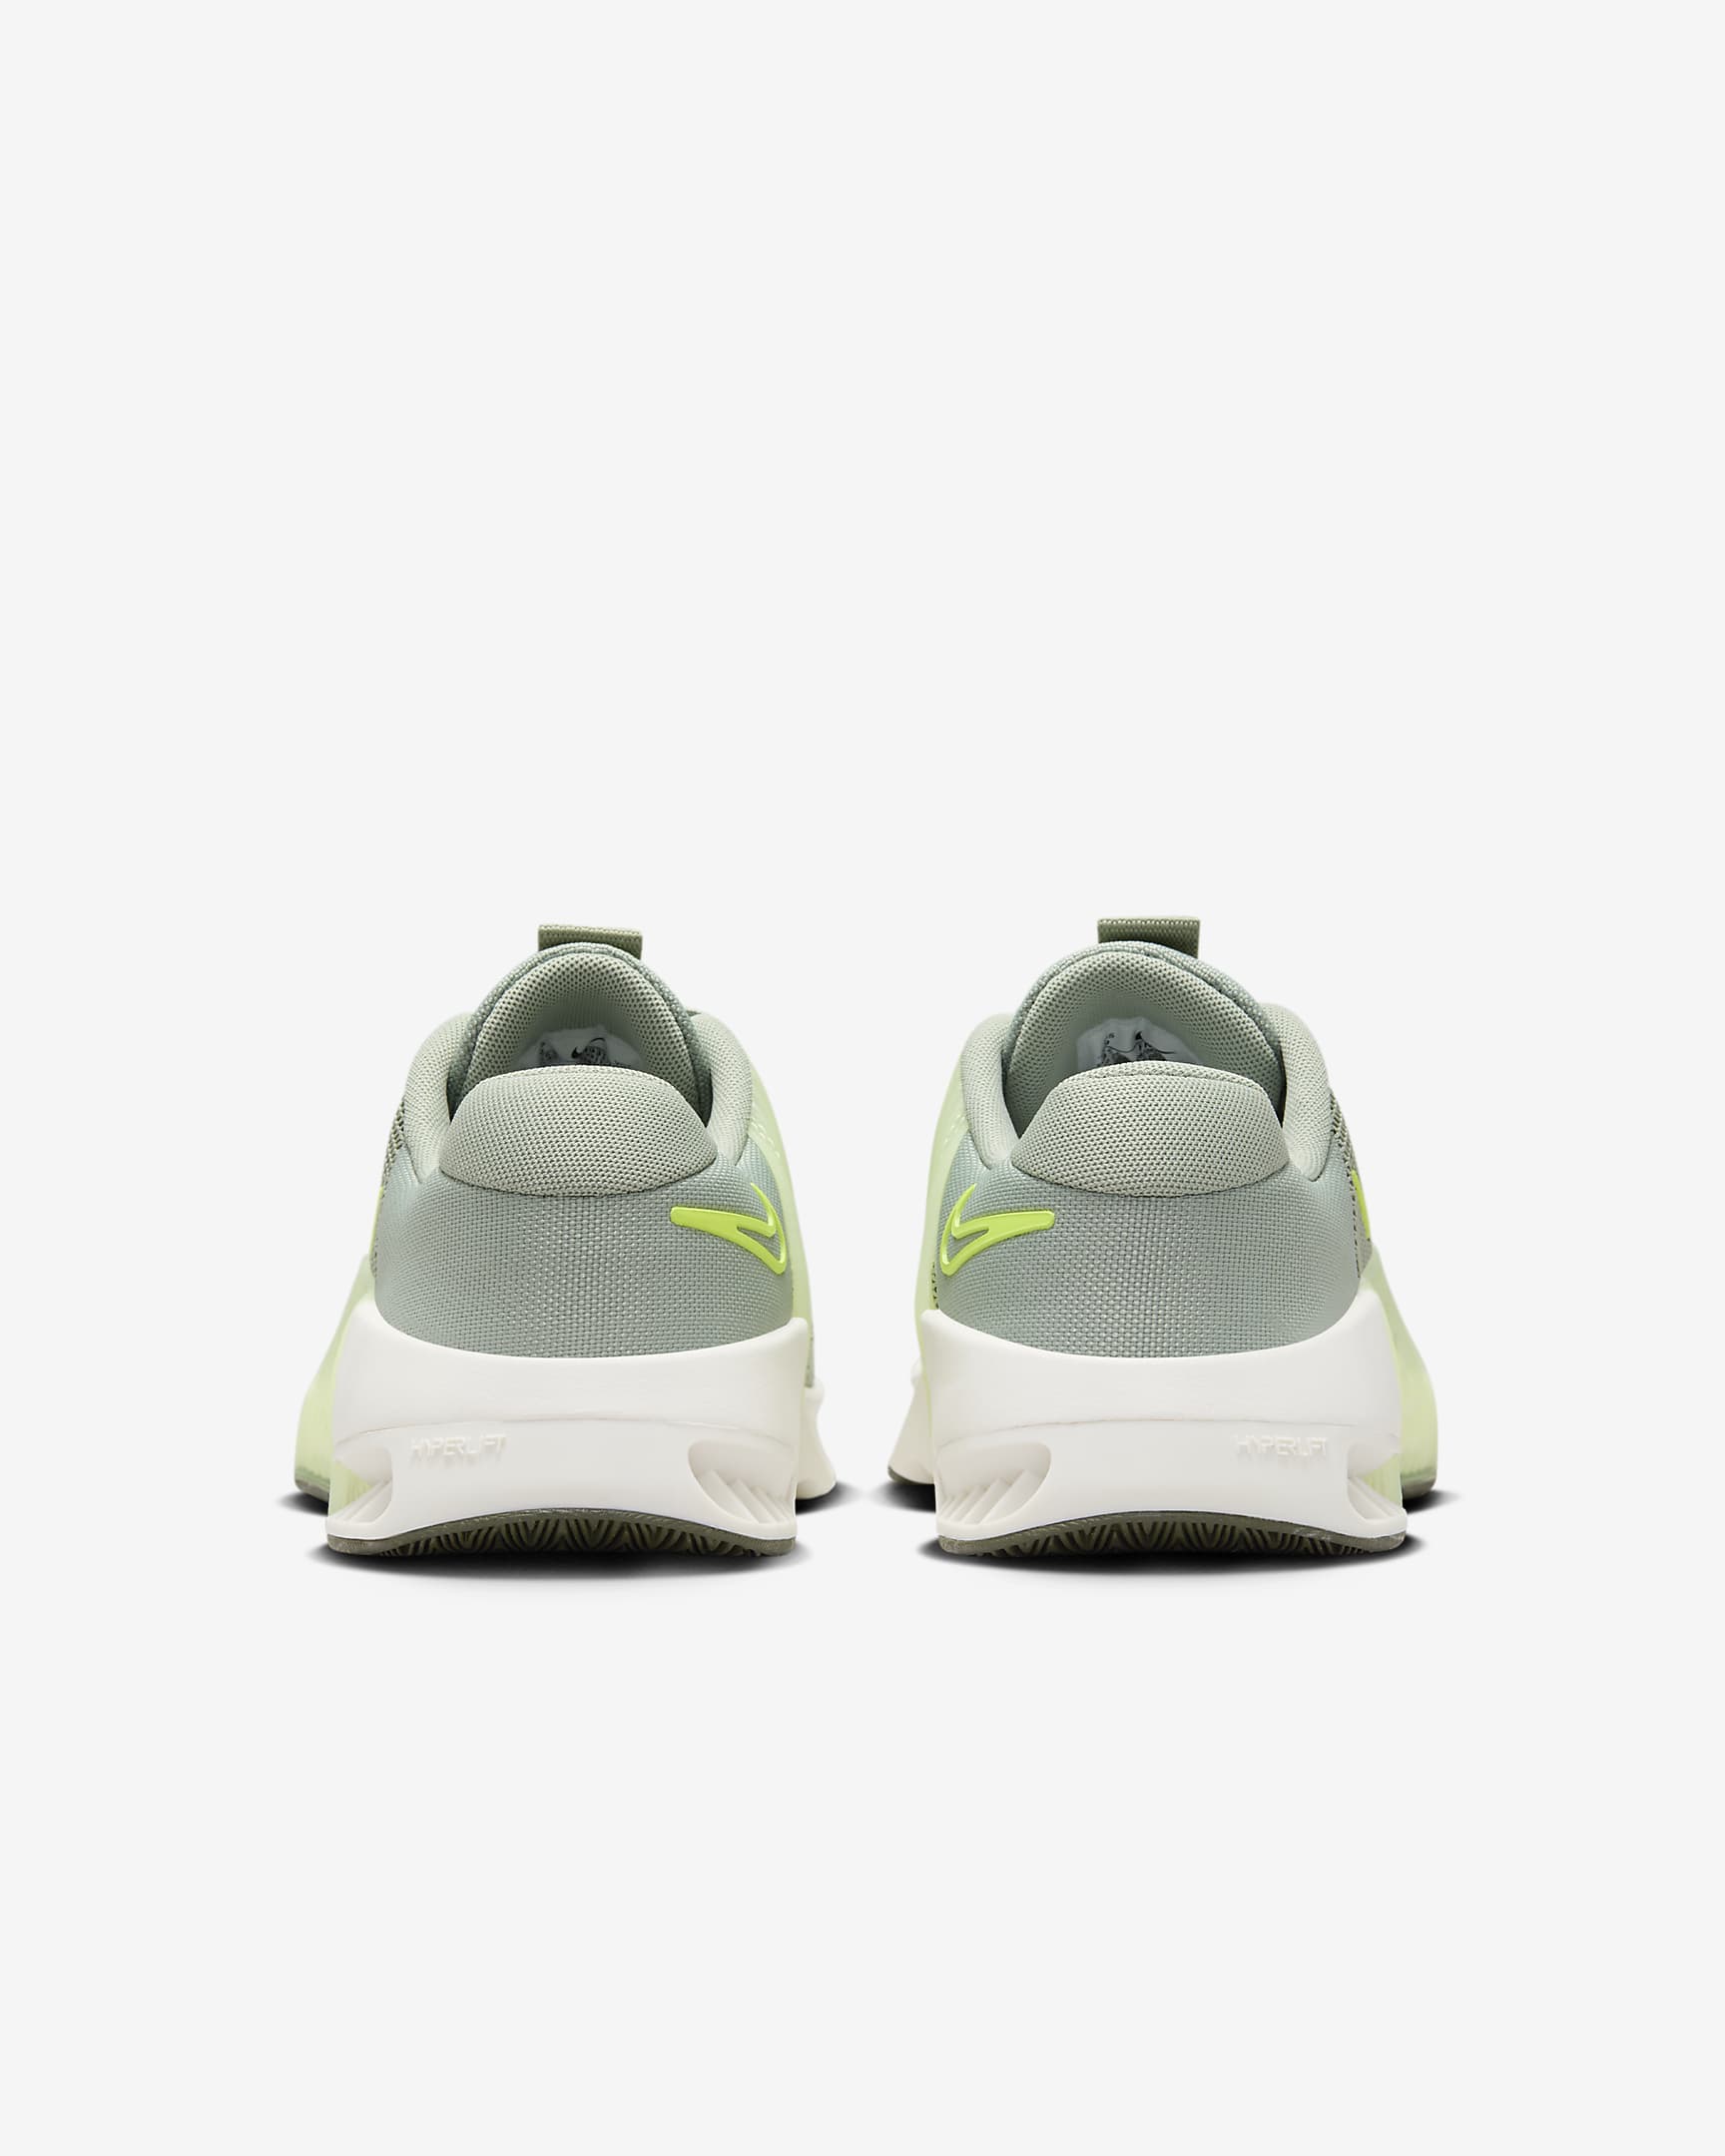 Chaussure d'entraînement Nike Metcon 9 Premium pour femme - Barely Volt/Olive Aura/Cargo Khaki/Barely Volt